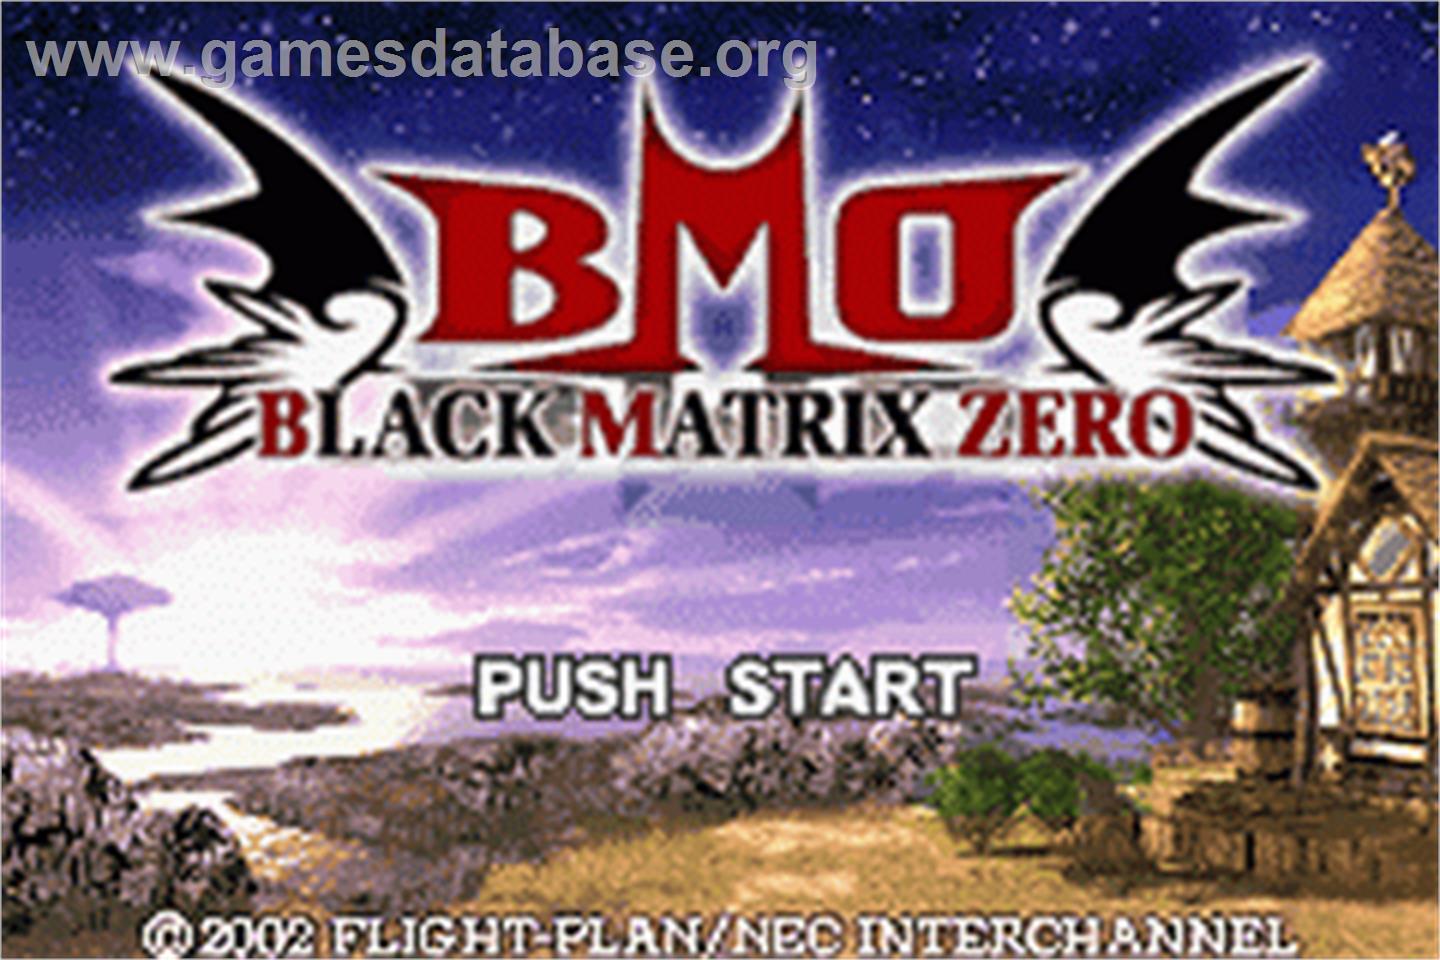 Black/Matrix Zero - Nintendo Game Boy Advance - Artwork - Title Screen